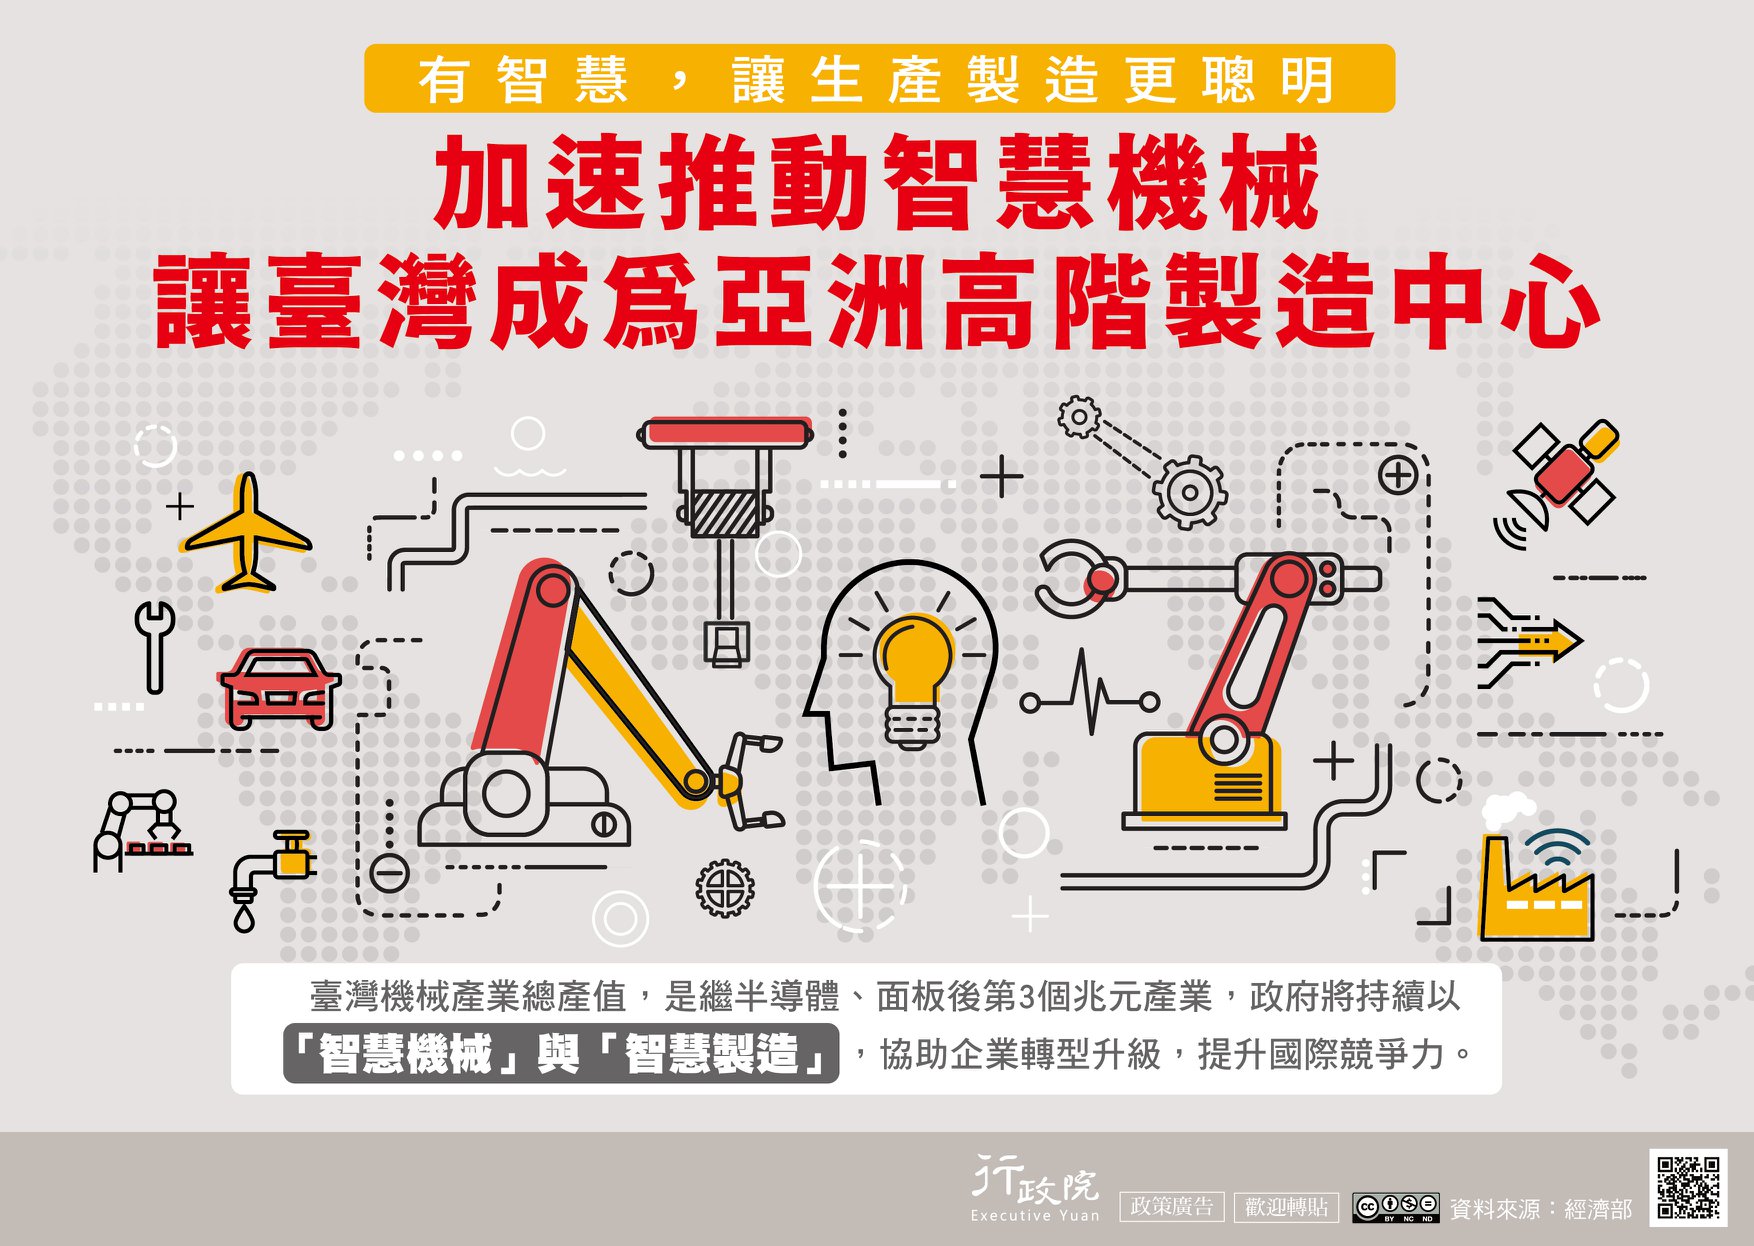 政策文宣~「加速推動智慧機械 讓臺灣成亞洲高階製造中心」